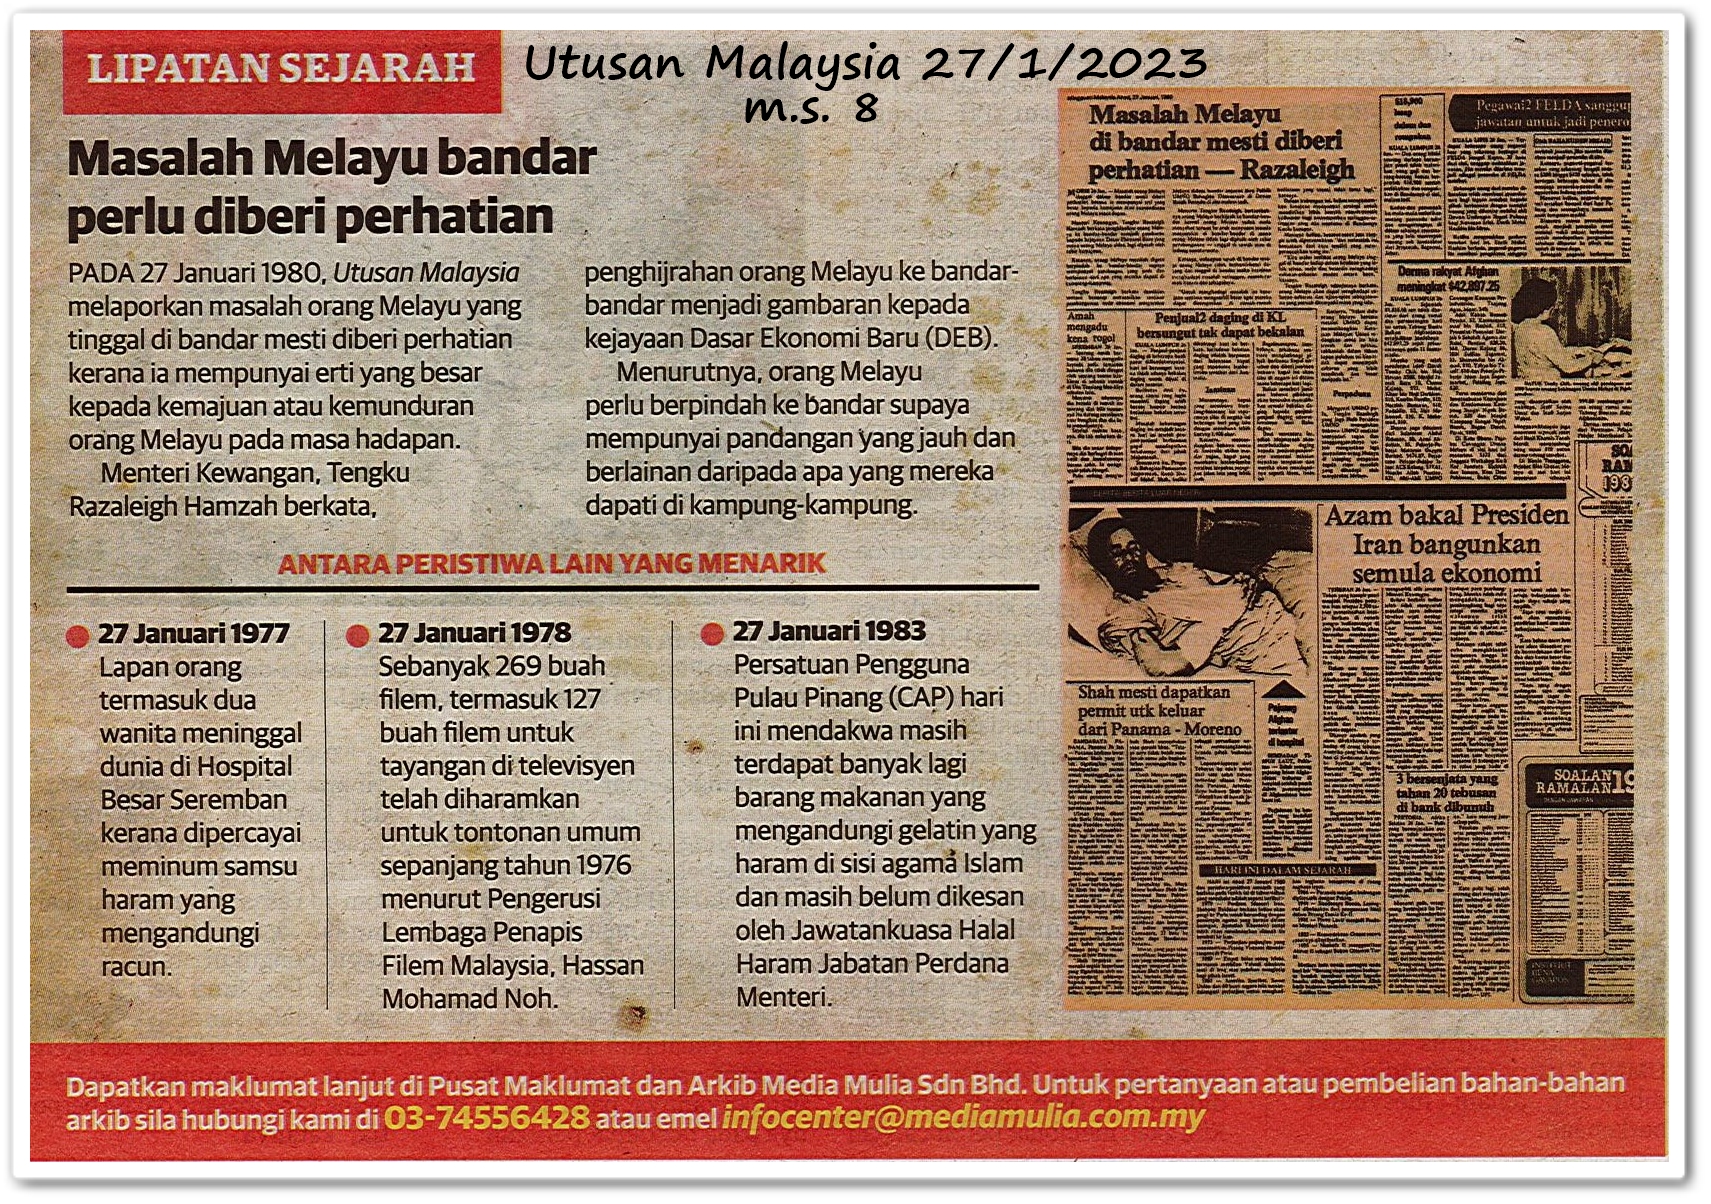 Lipatan sejarah 27 Januari - Keratan akhbar Utusan Malaysia 27 Januari 2023